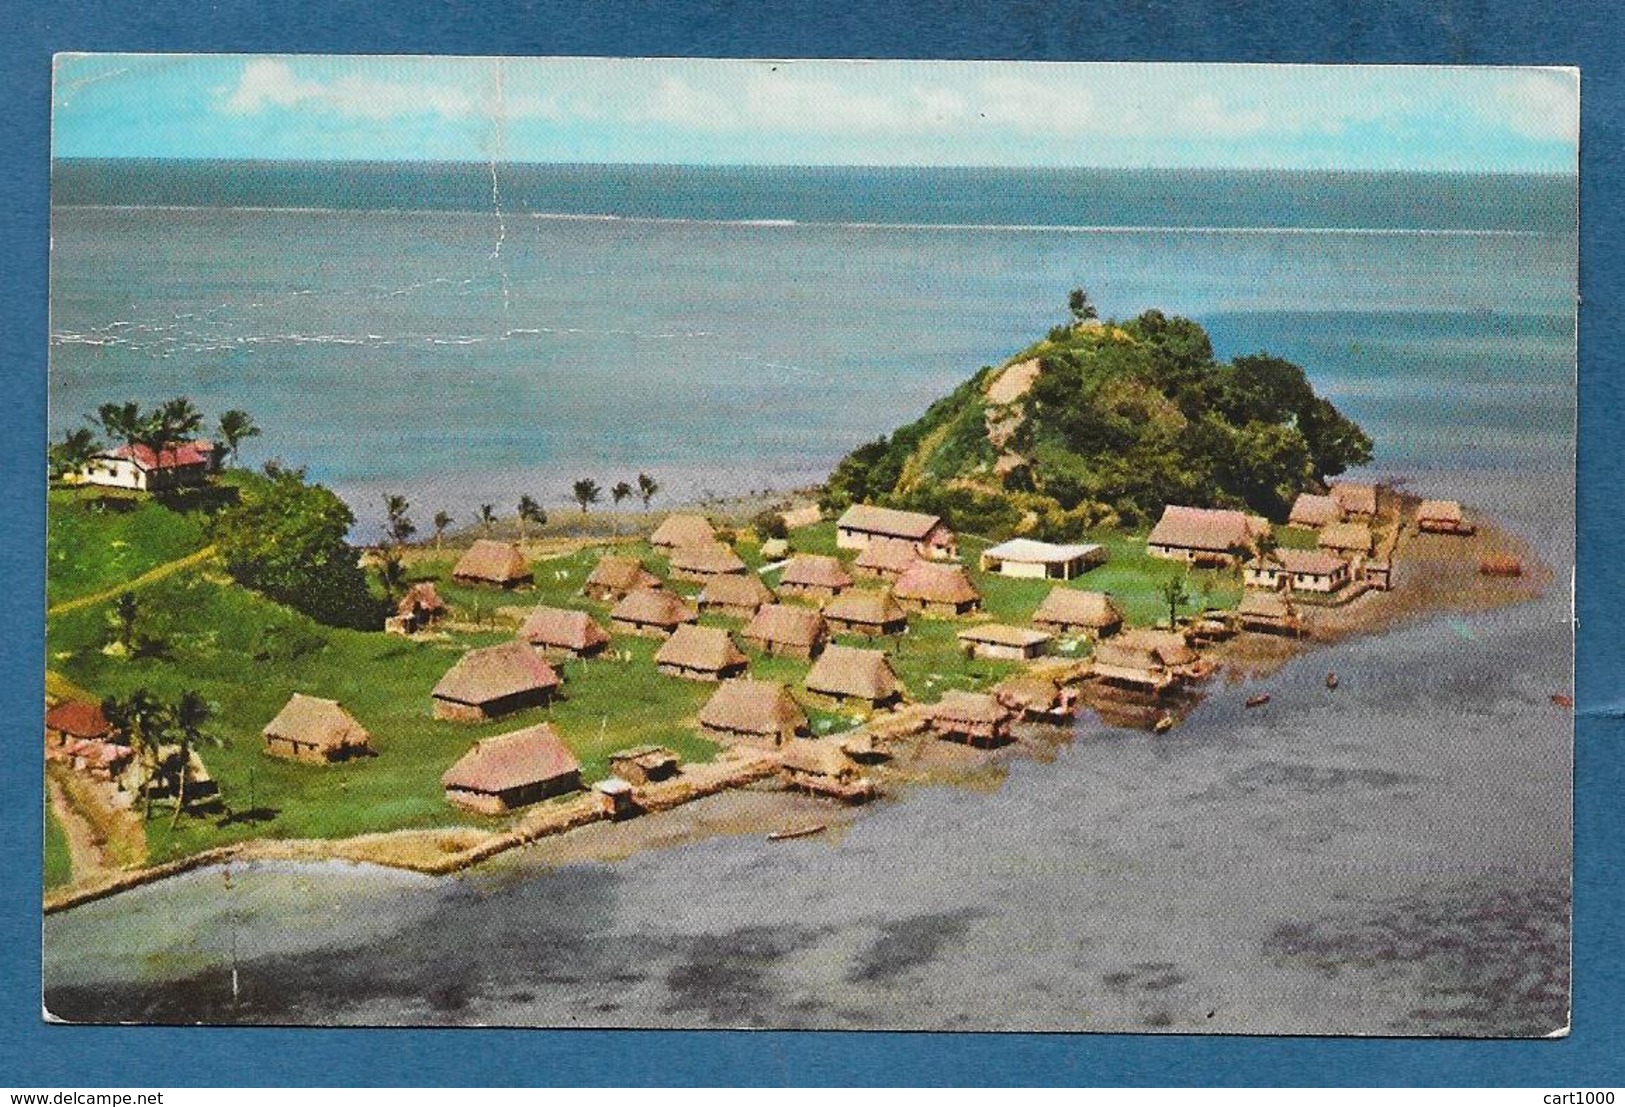 FIJI SERUA ISLAND 1967 - Fiji